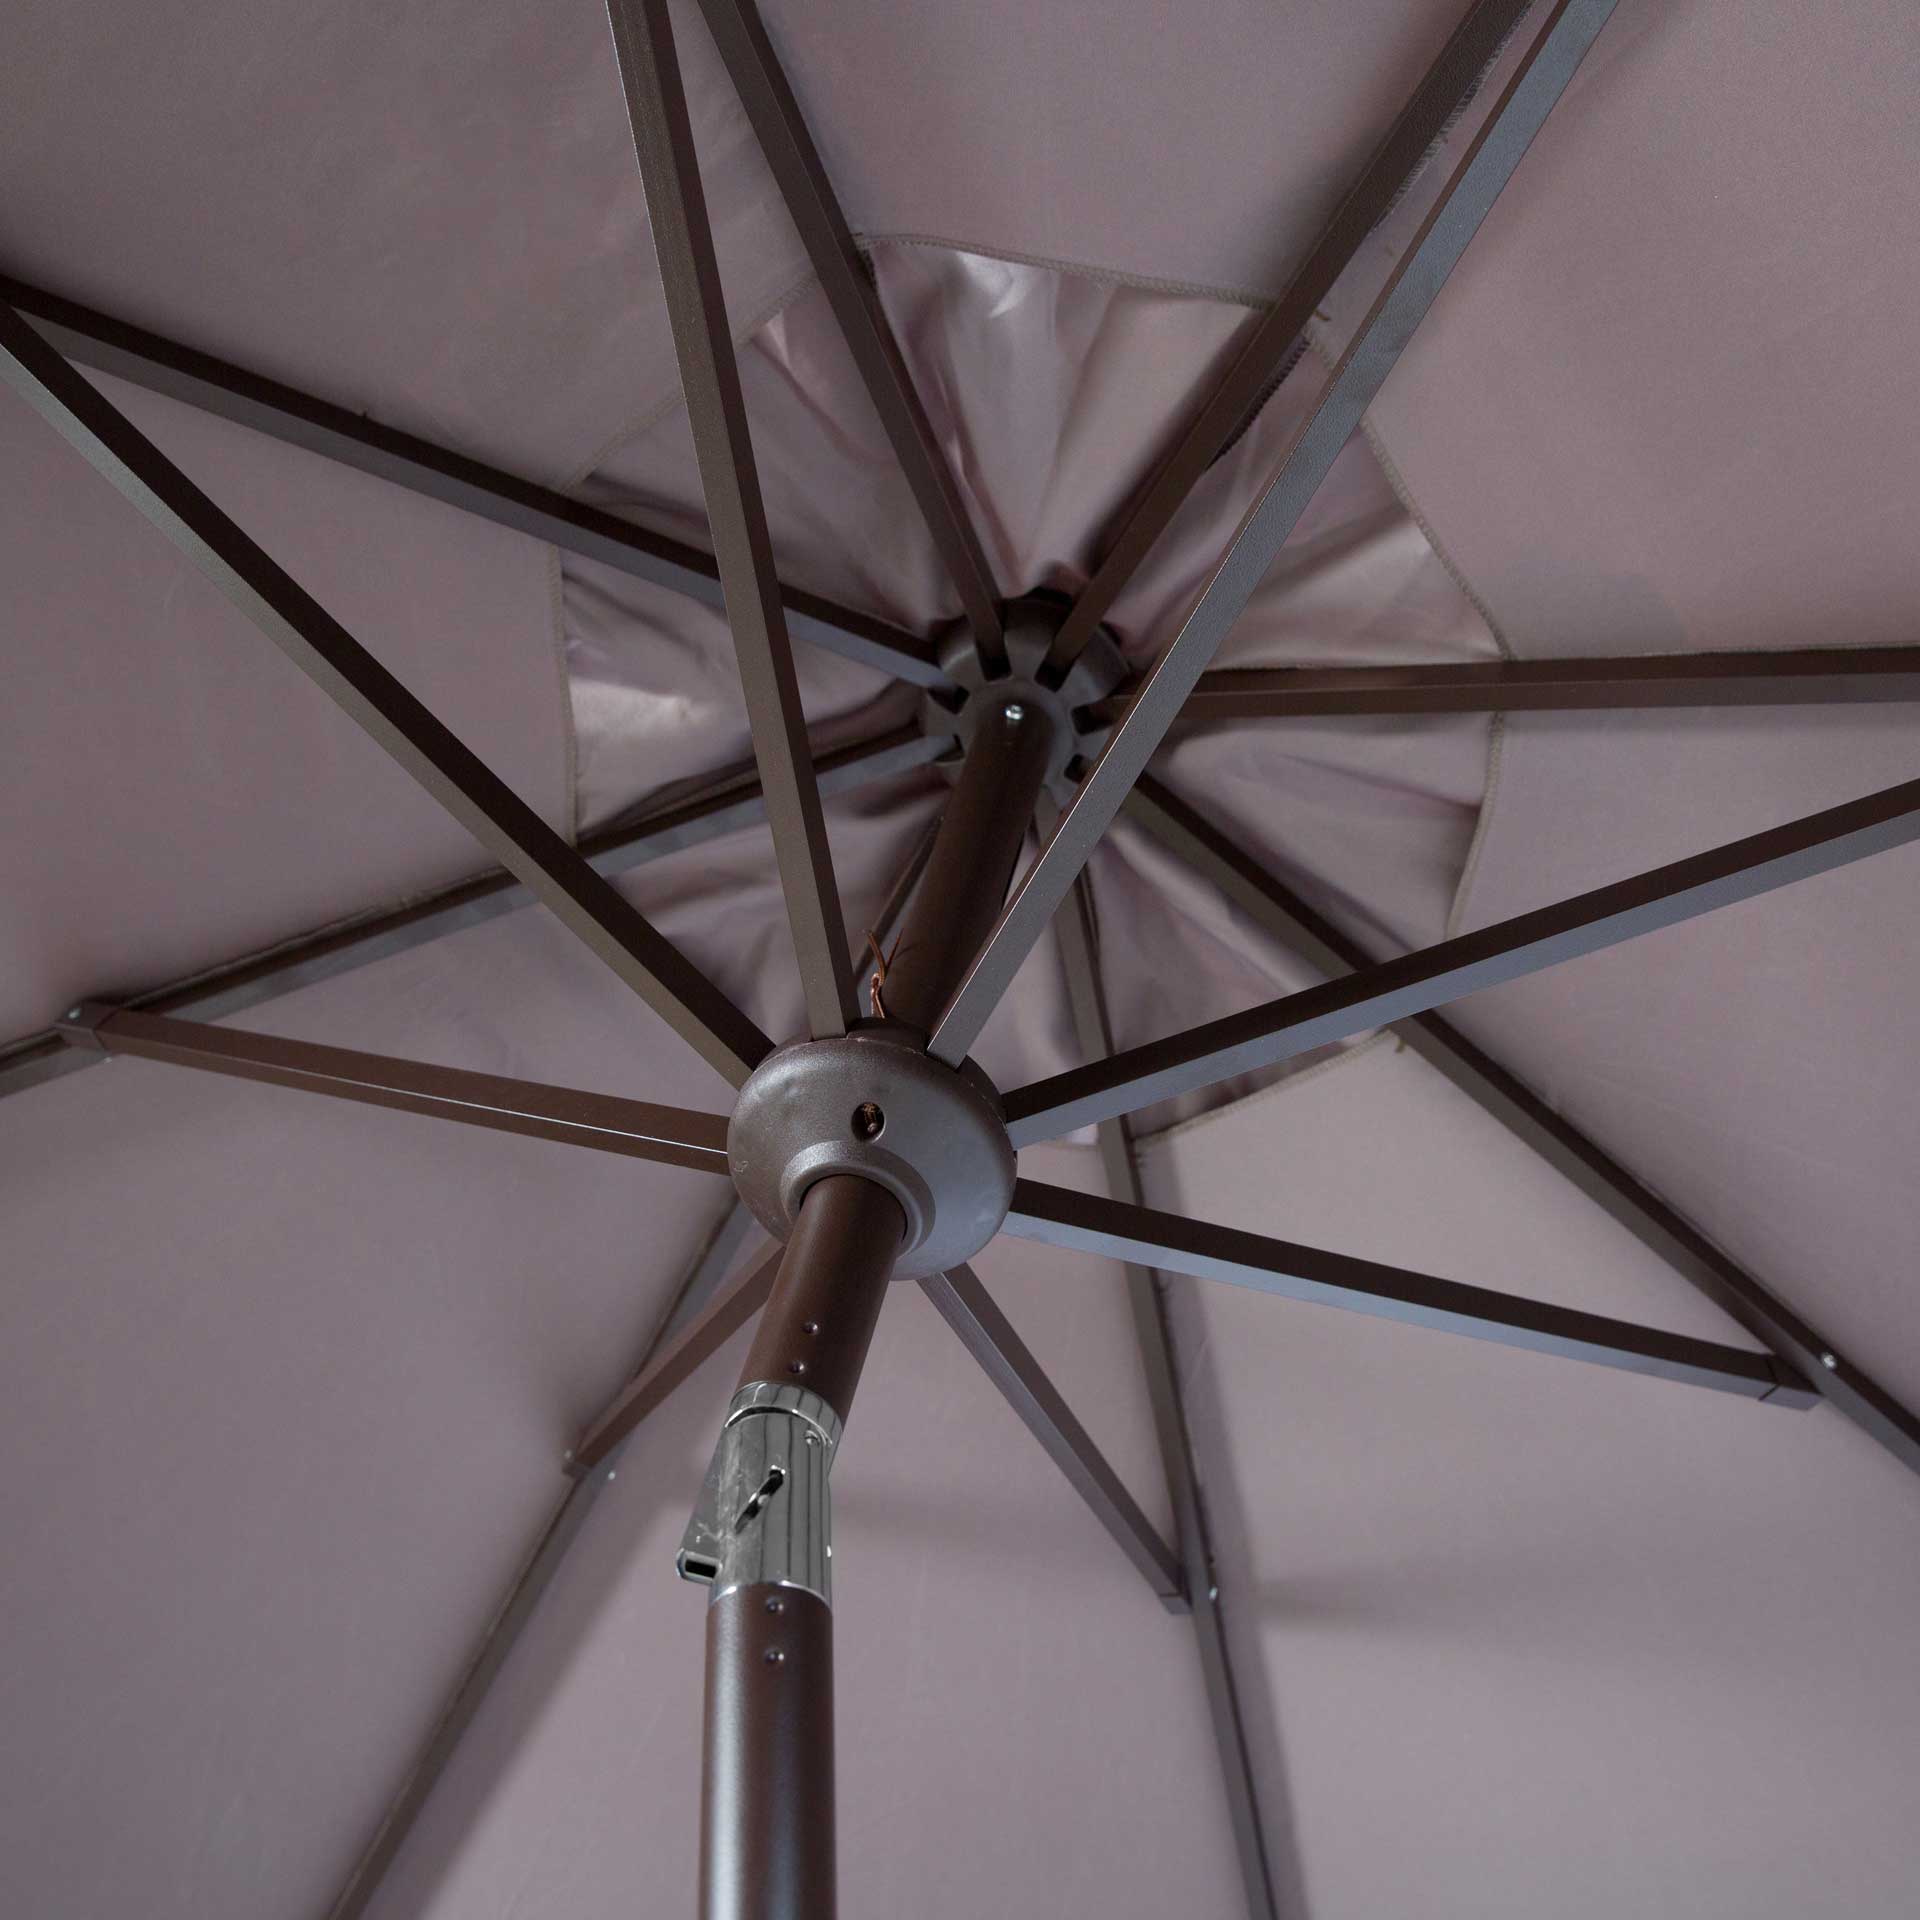 Orna Uv Resistant Auto Tilt Crank Umbrella Gray